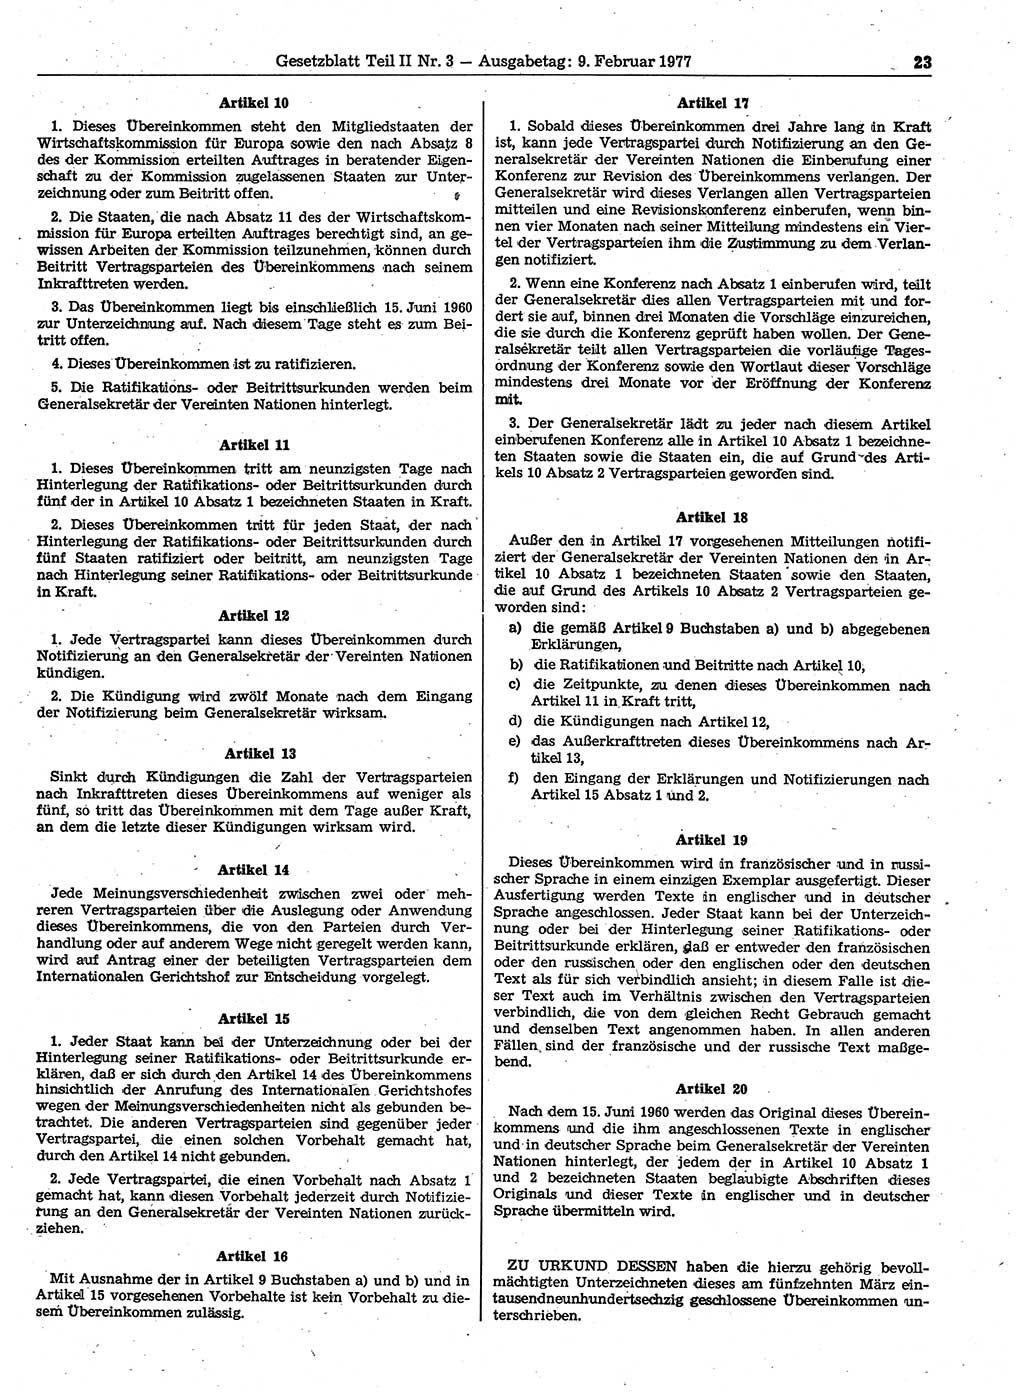 Gesetzblatt (GBl.) der Deutschen Demokratischen Republik (DDR) Teil ⅠⅠ 1977, Seite 23 (GBl. DDR ⅠⅠ 1977, S. 23)